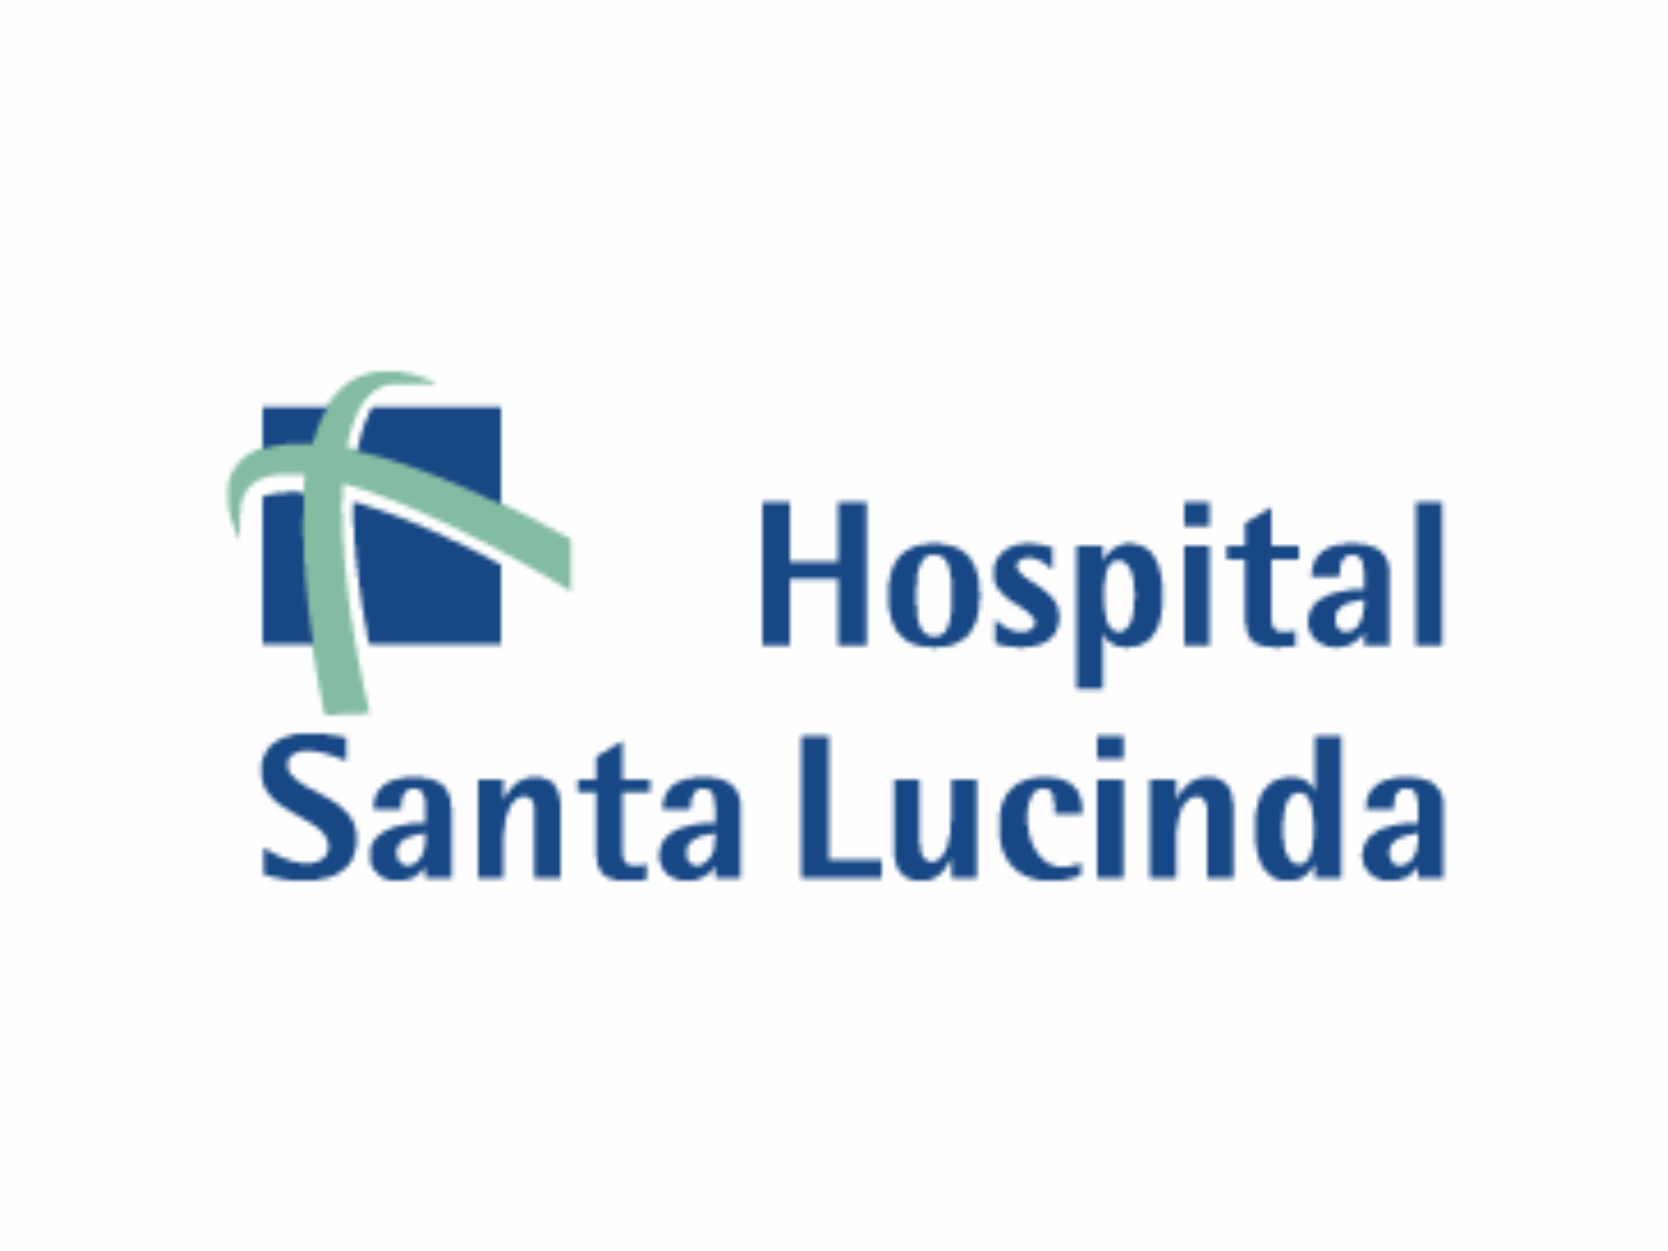 Hospital Santa Lucinda